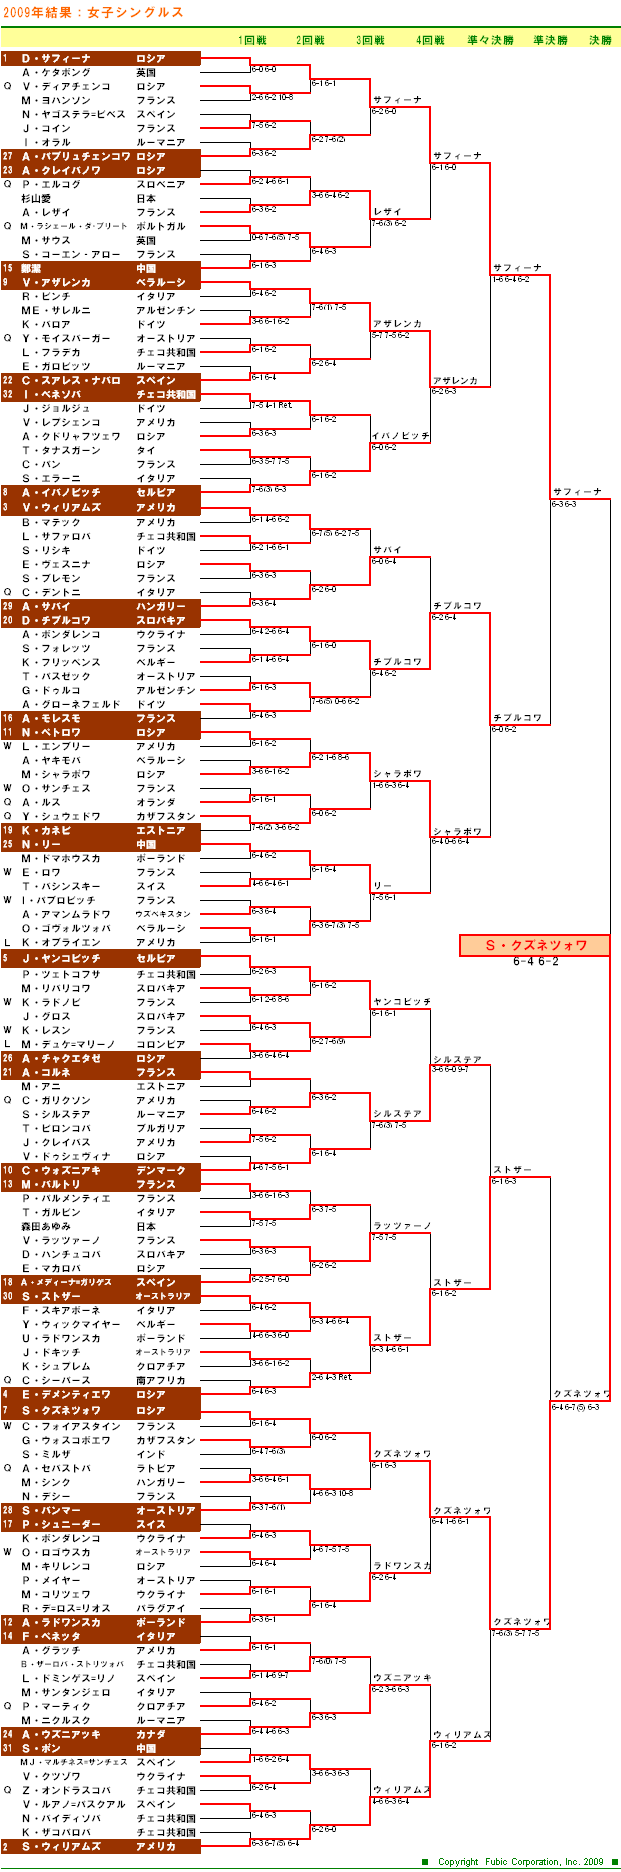 全仏オープンテニス2009　女子シングルスドロー表